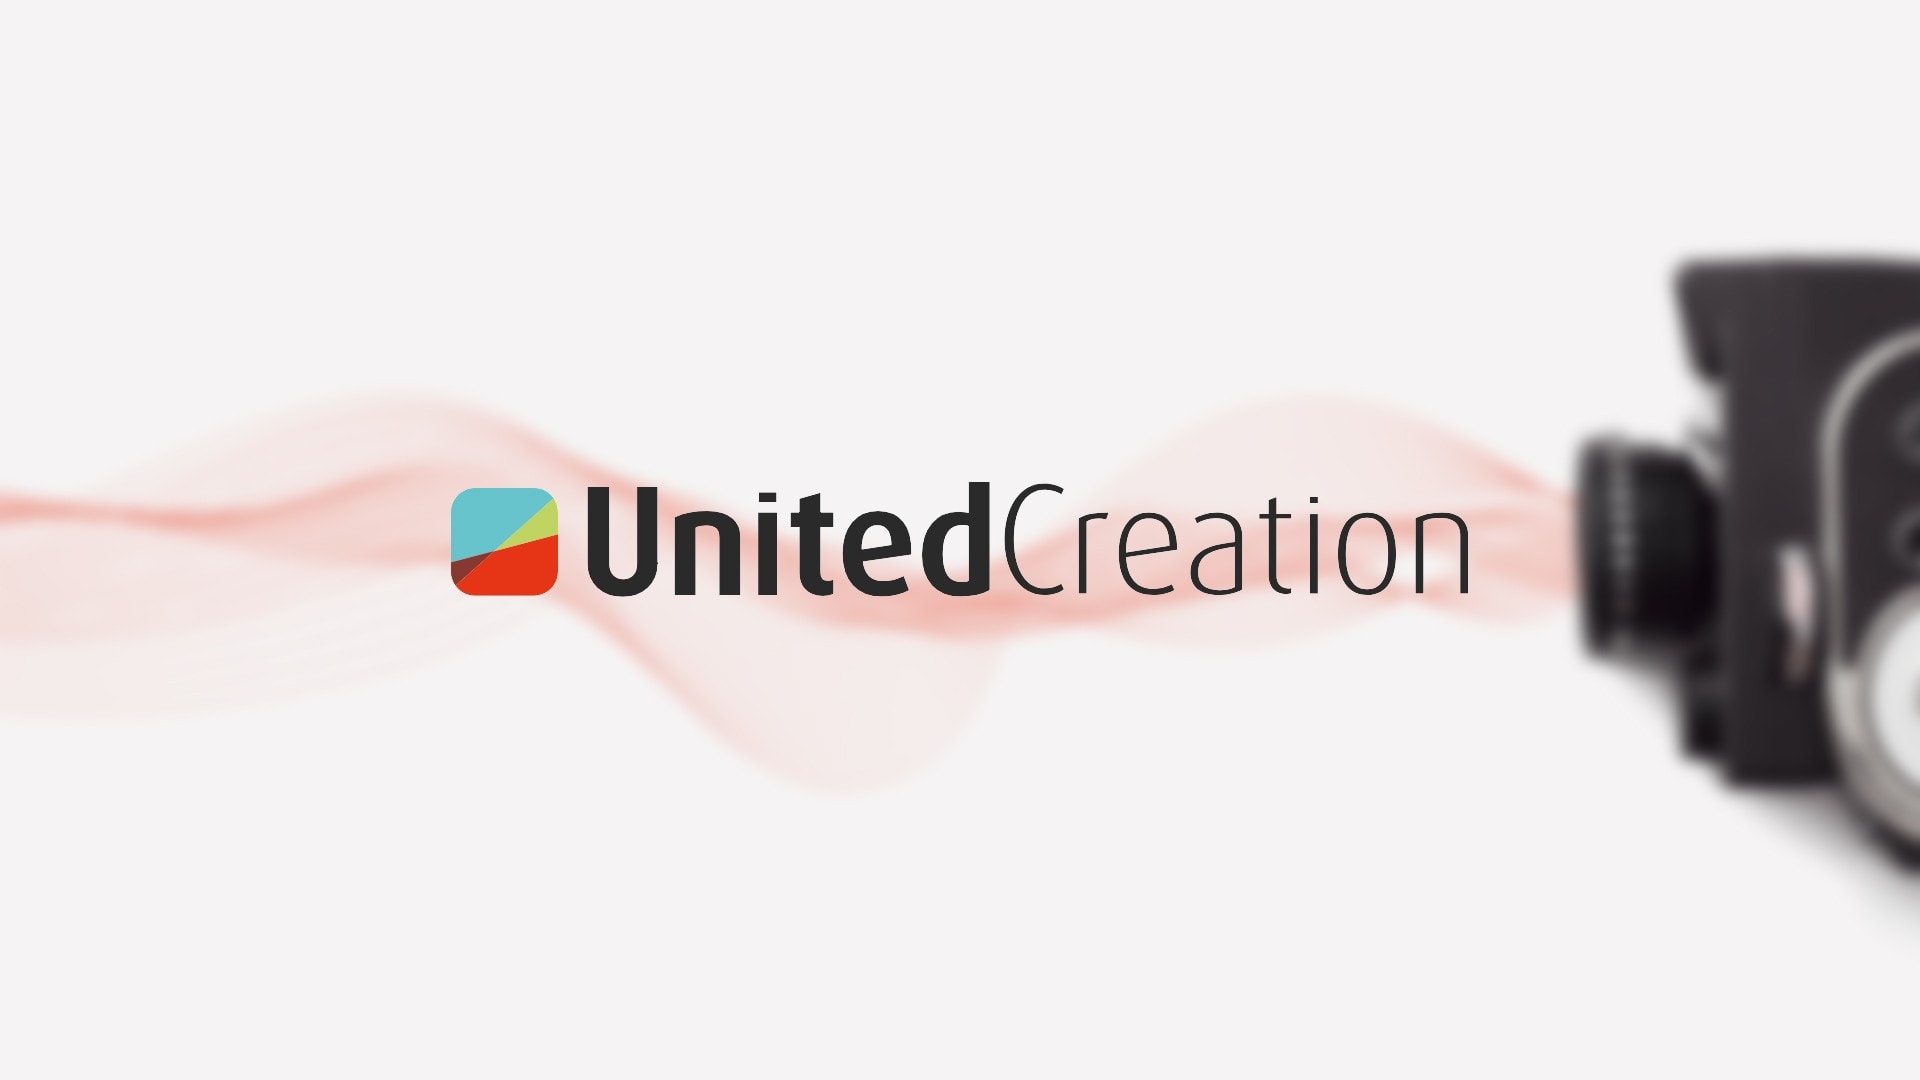 Webdesign und Markenauftritt für die Fullserviceagentur United Creation